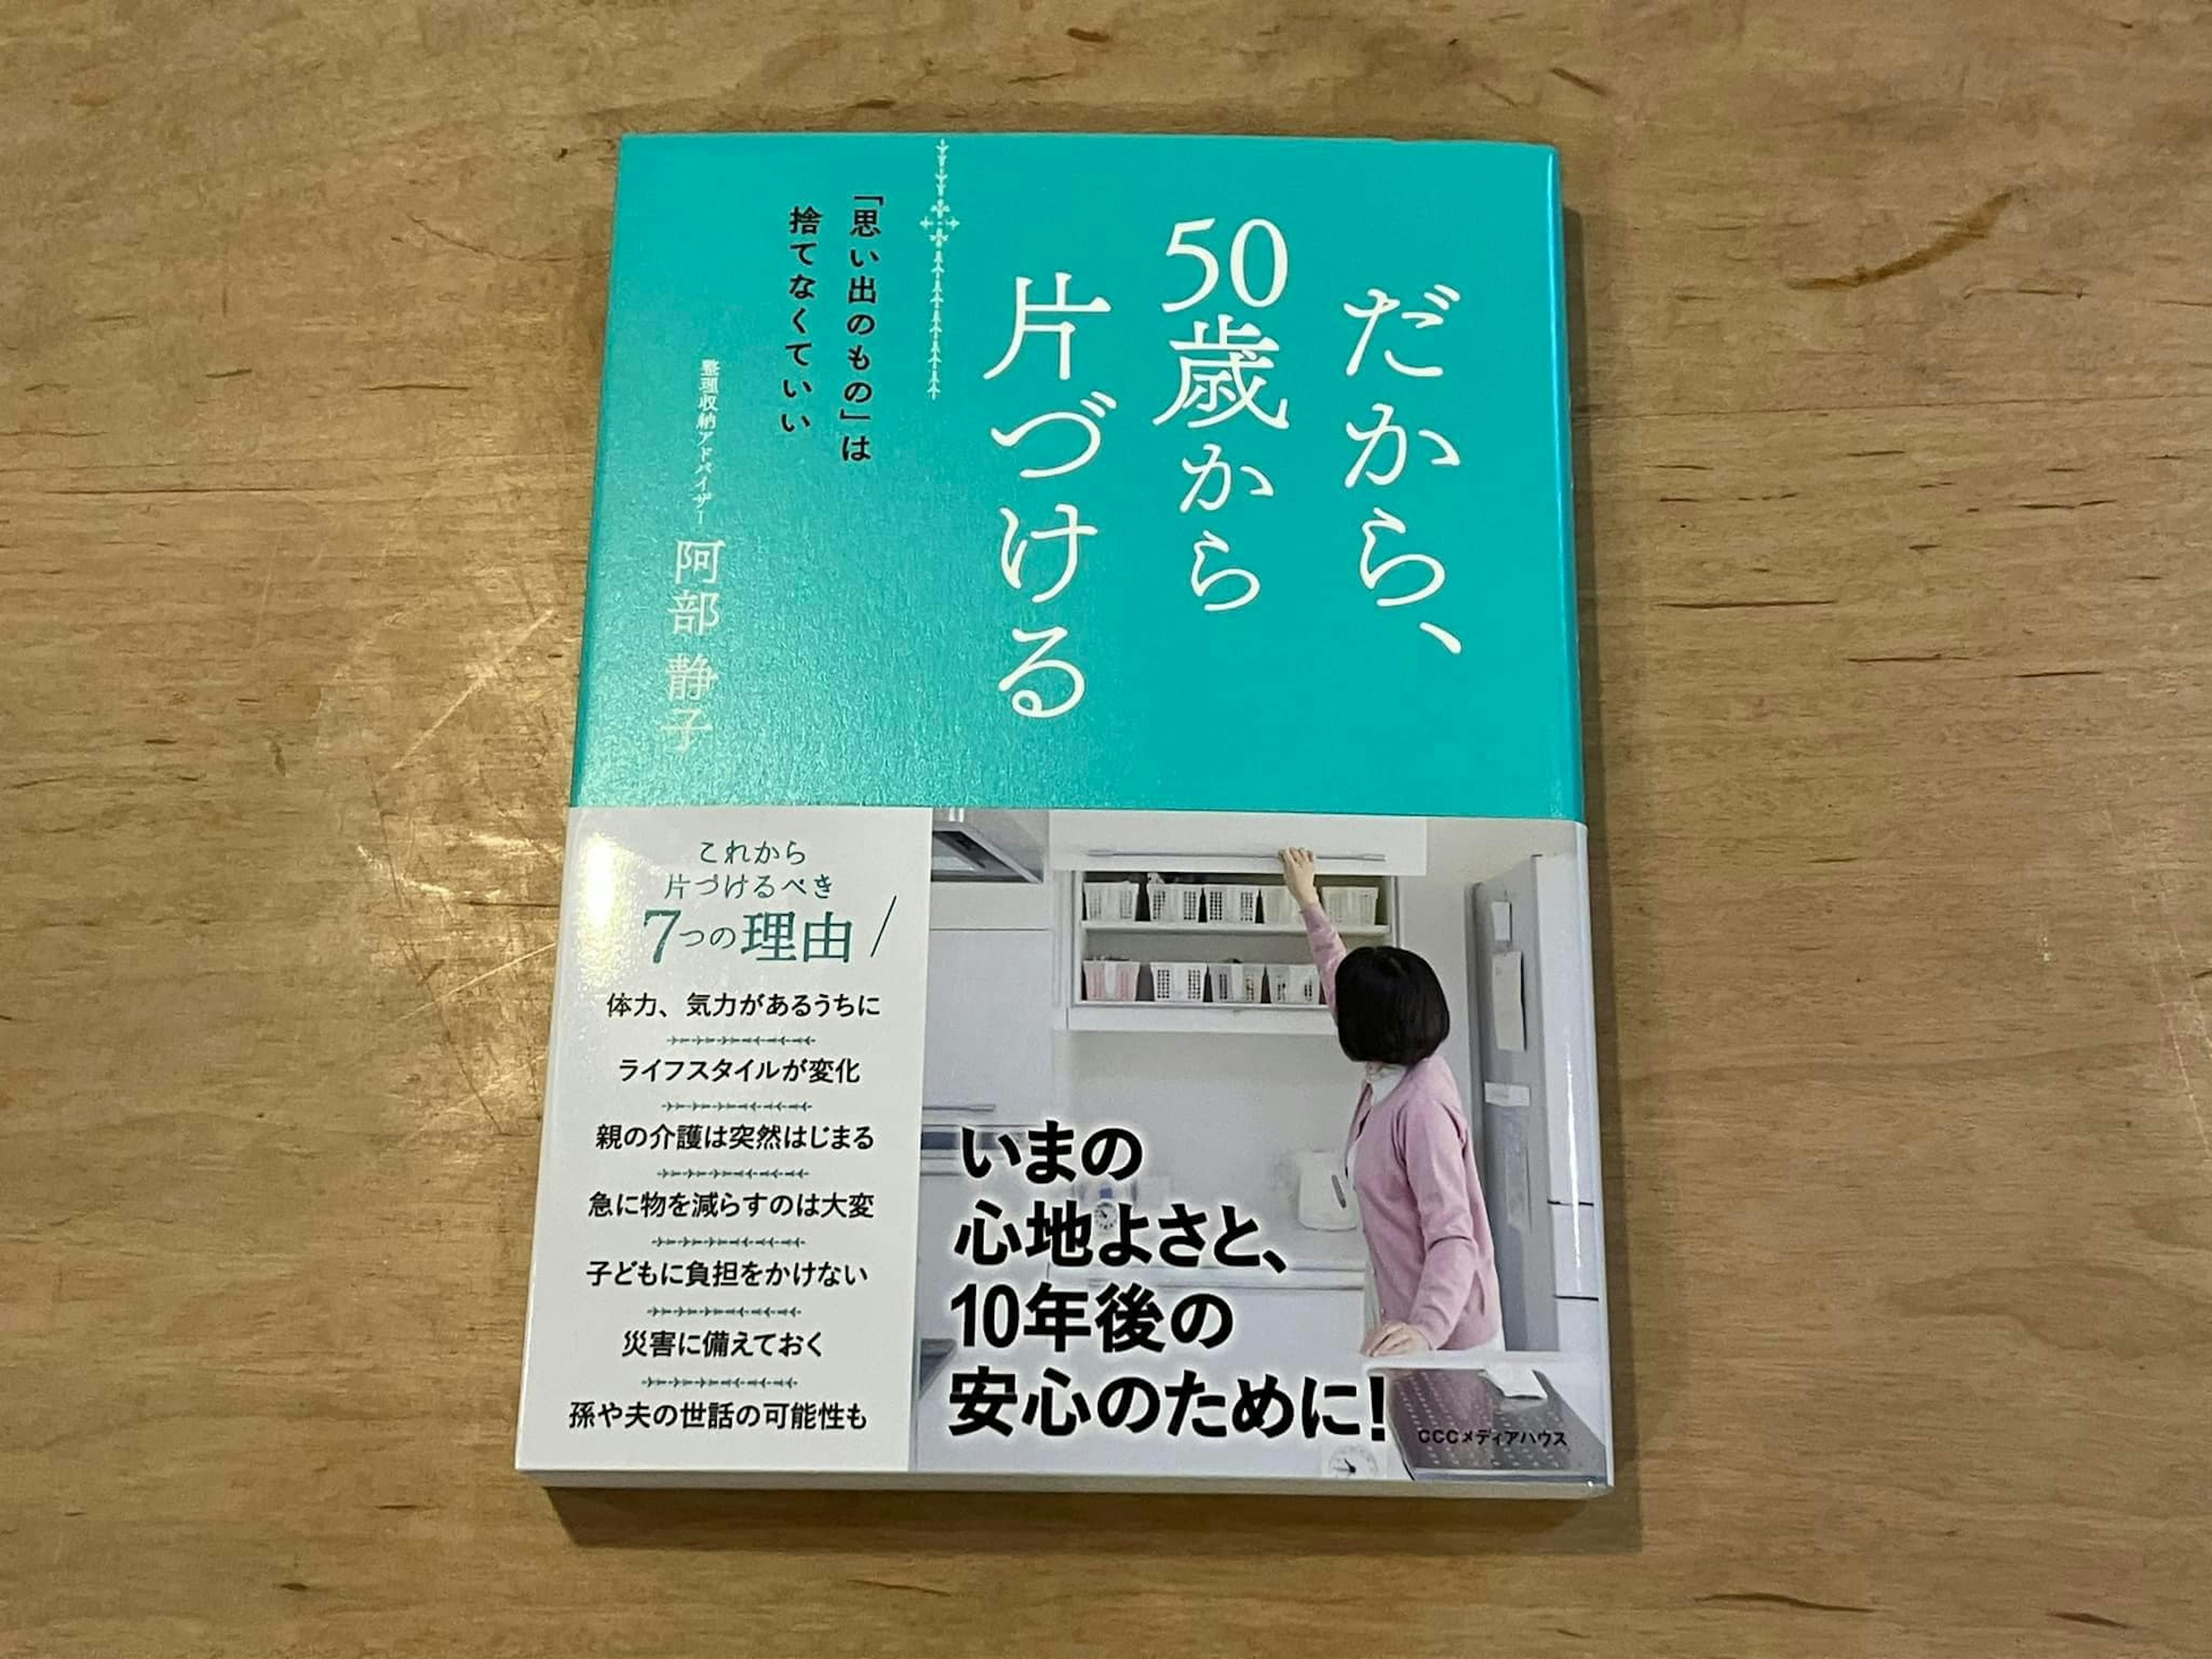 【PR】阿部静子「だから、50歳から片づける 「思い出のもの」は捨てなくていい」